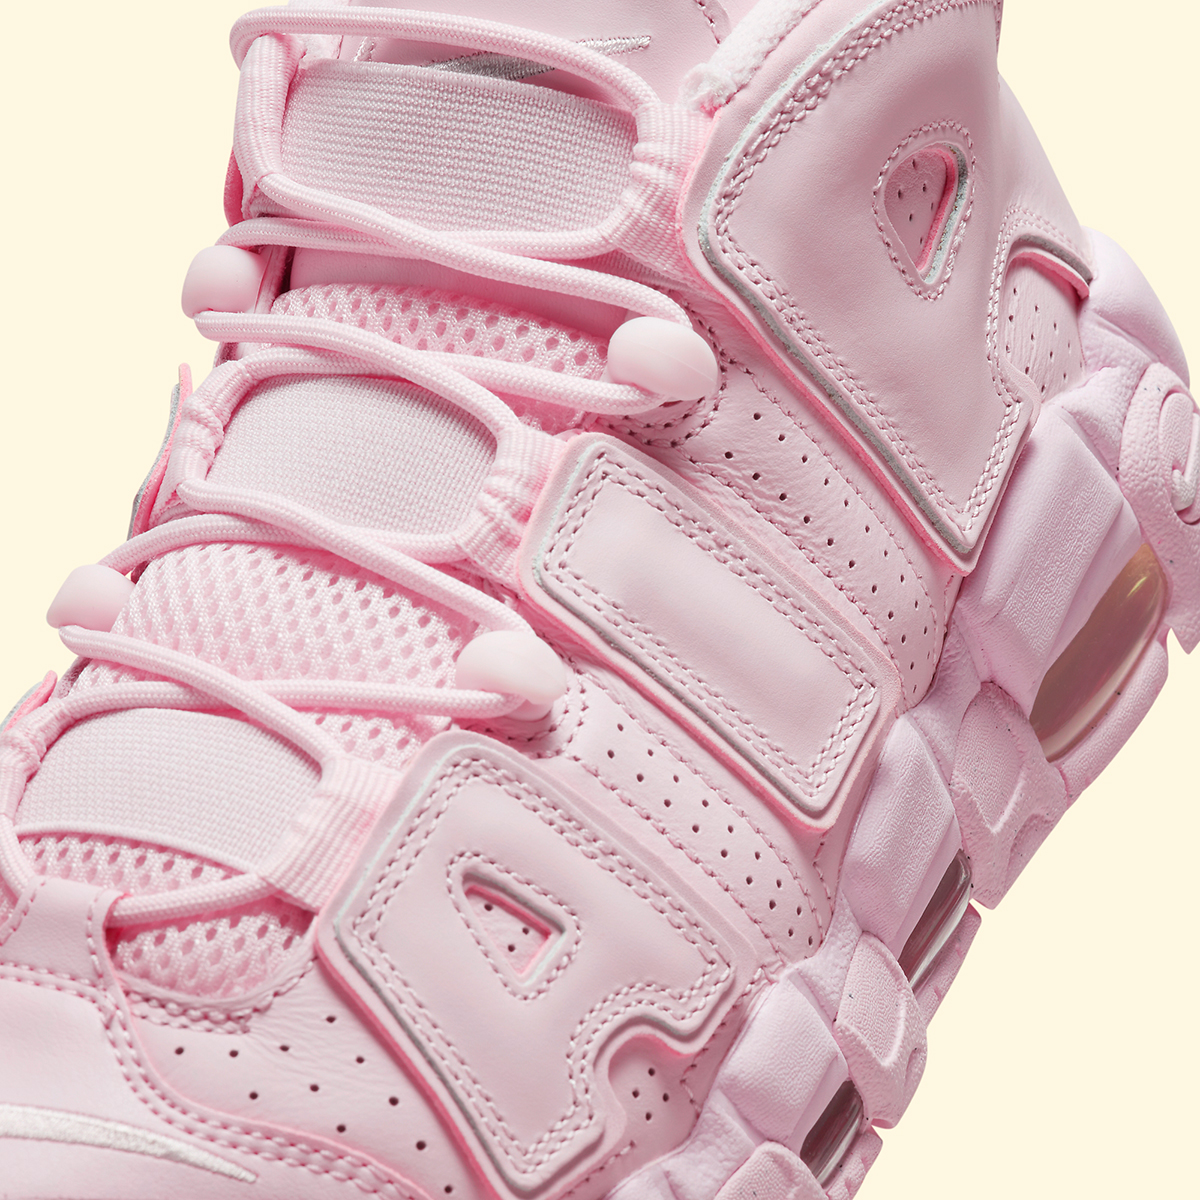 nike cortez flyknit shoes sale online Pink Foam White Dv1137 600 8